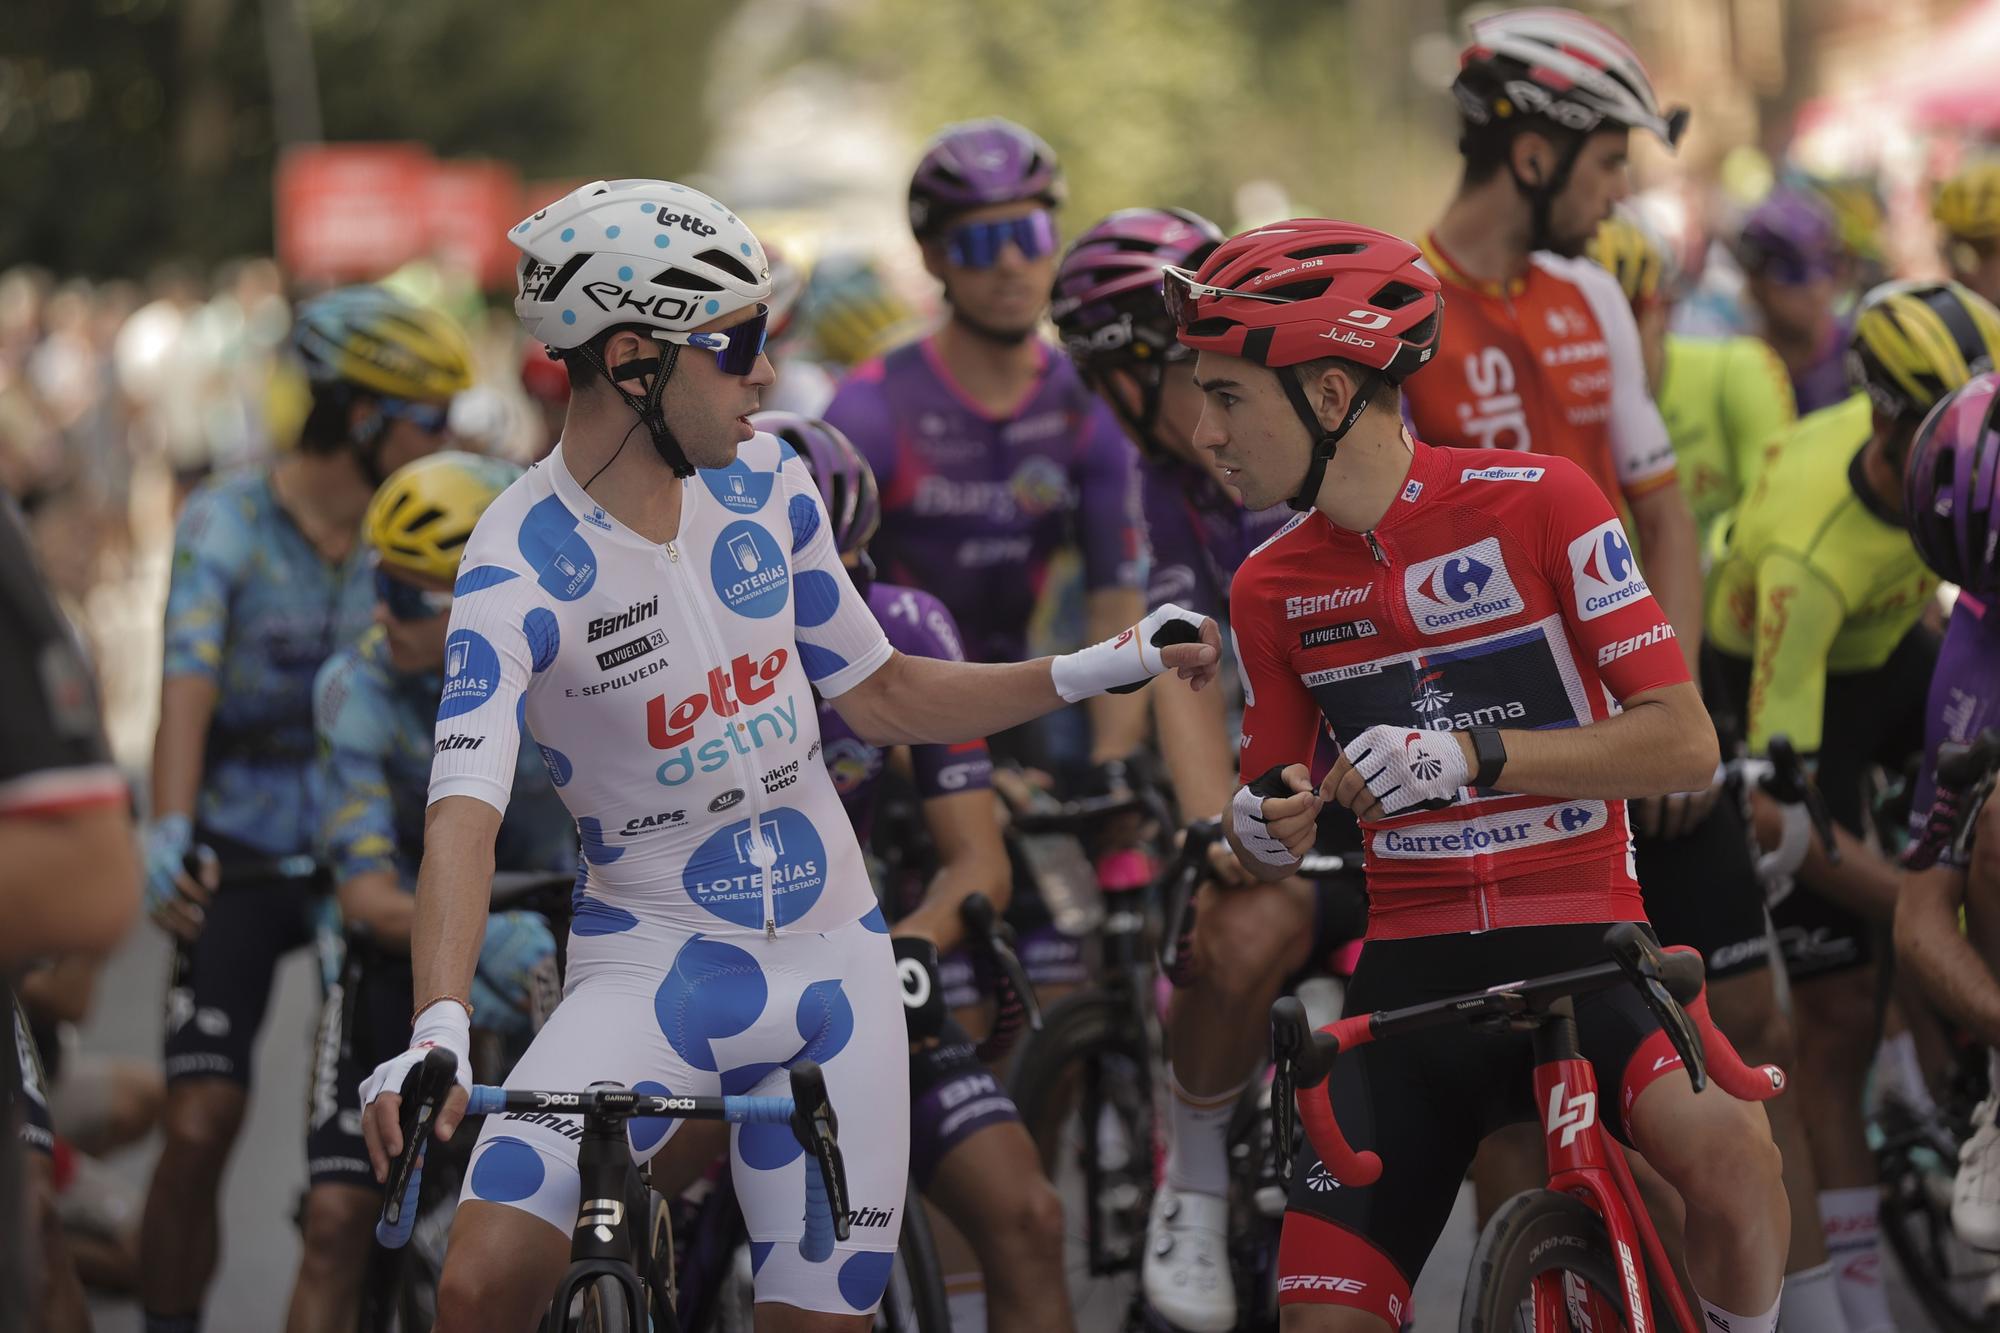 Séptima etapa de la Vuelta Ciclista a España 202. Utiel-Oliva